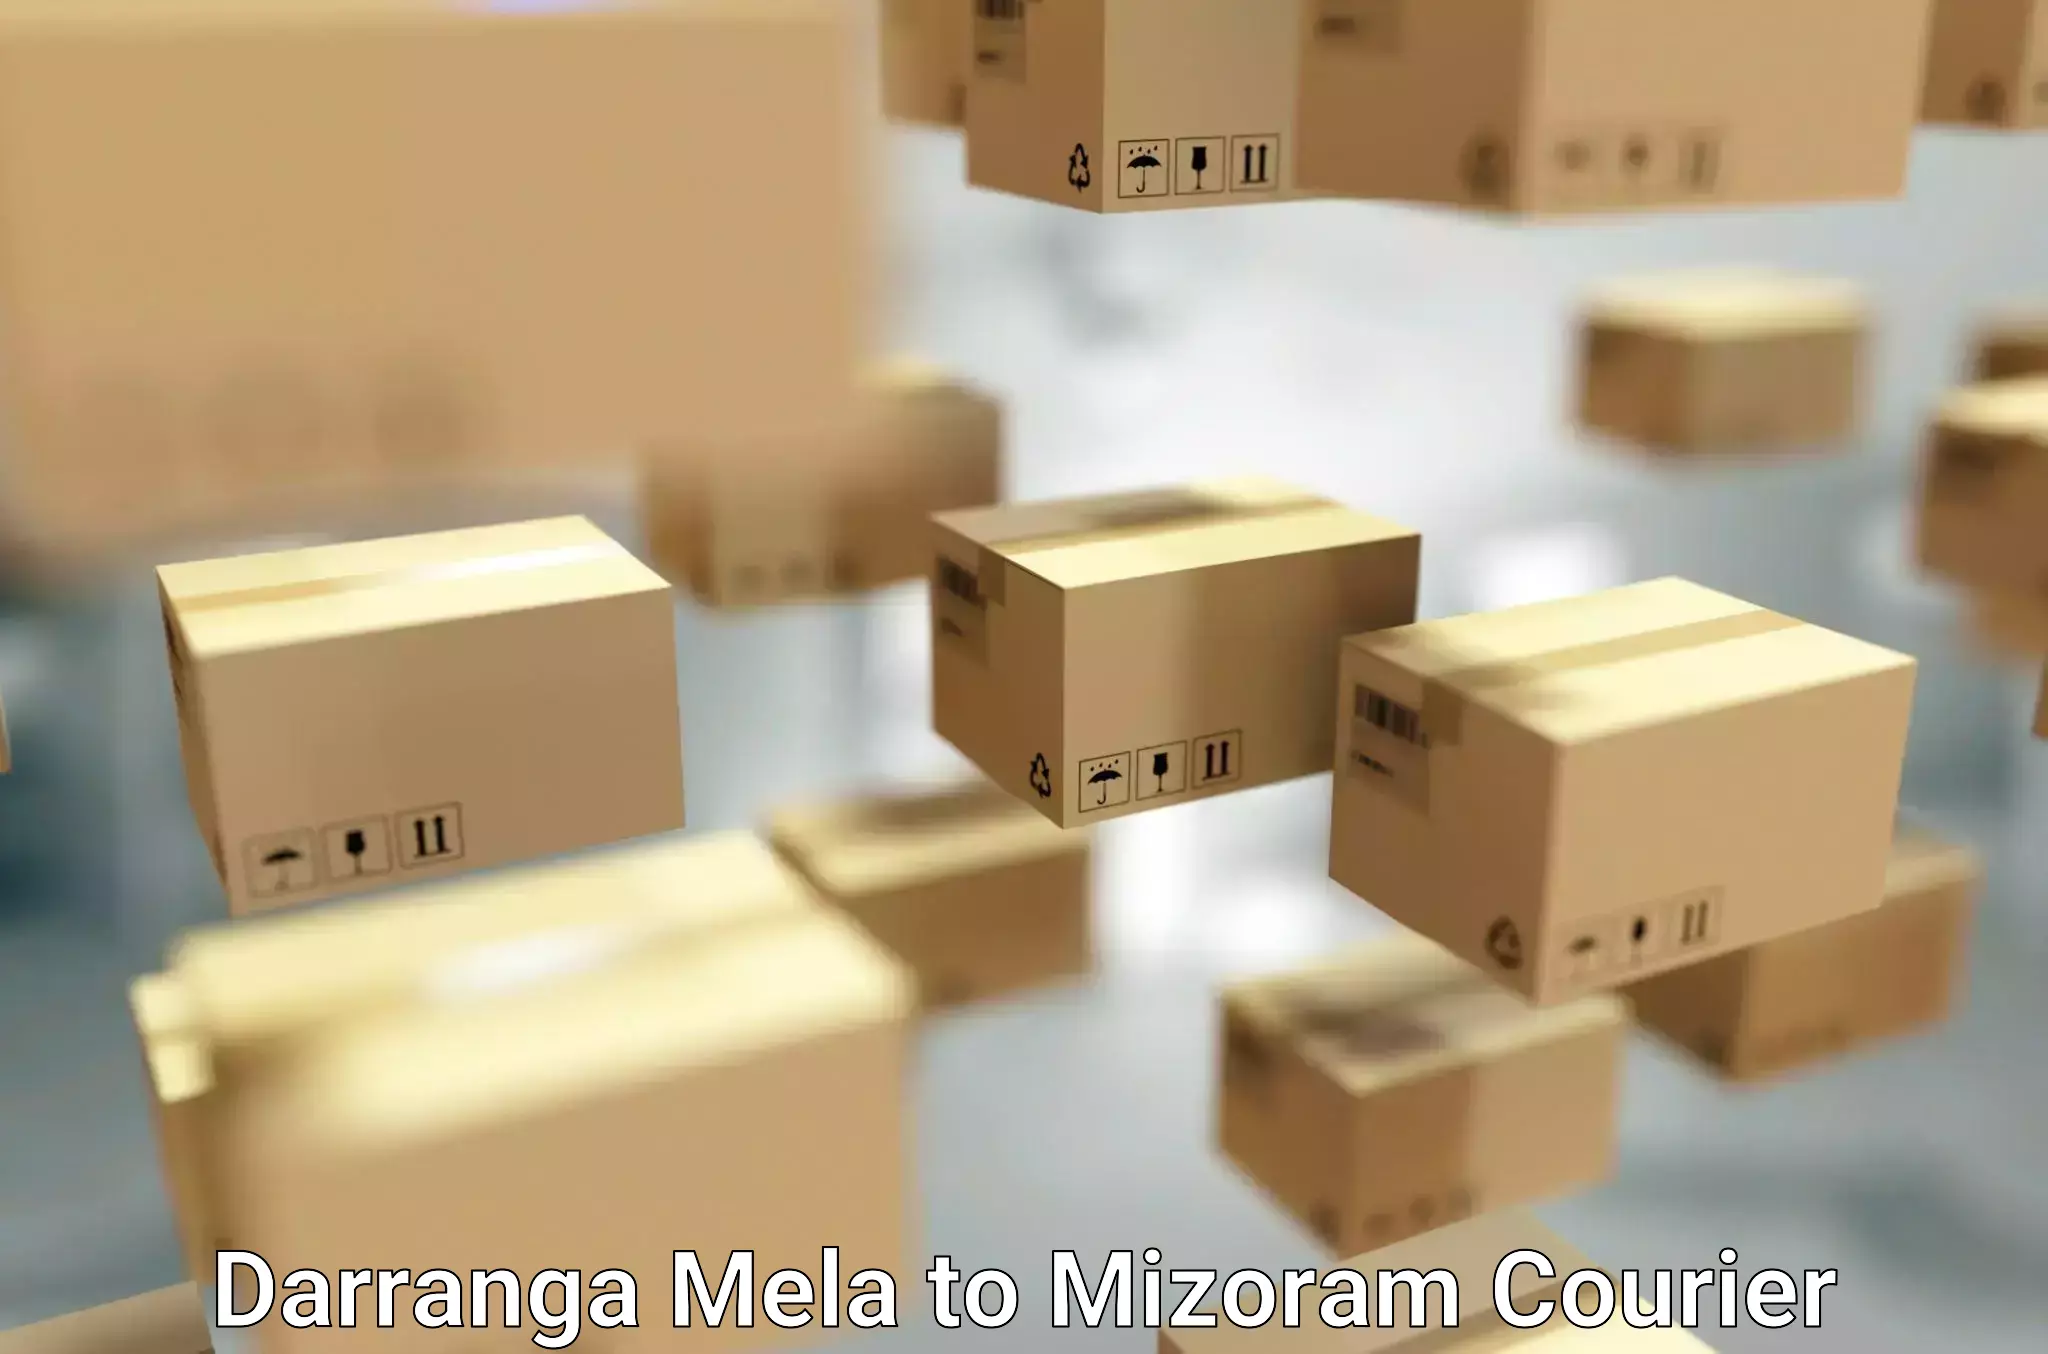 Reliable movers Darranga Mela to Thenzawl